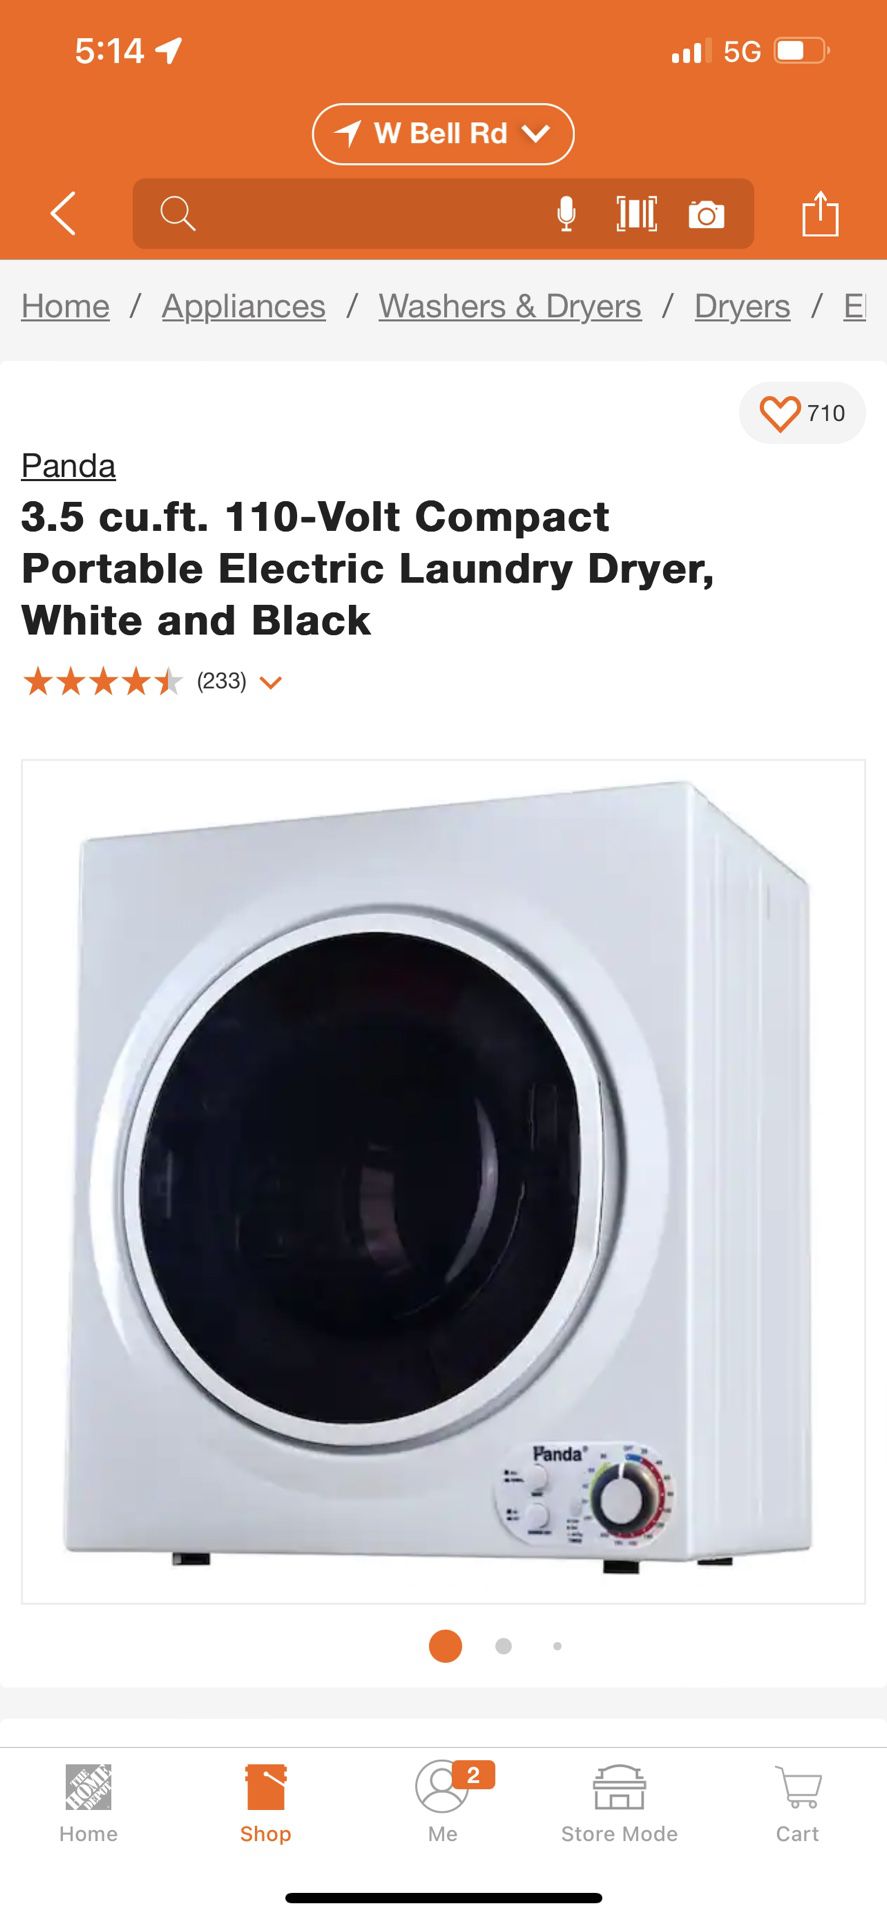 Panda 3.5 cu.ft. 110-Volt Compact Portable Electric Laundry Dryer